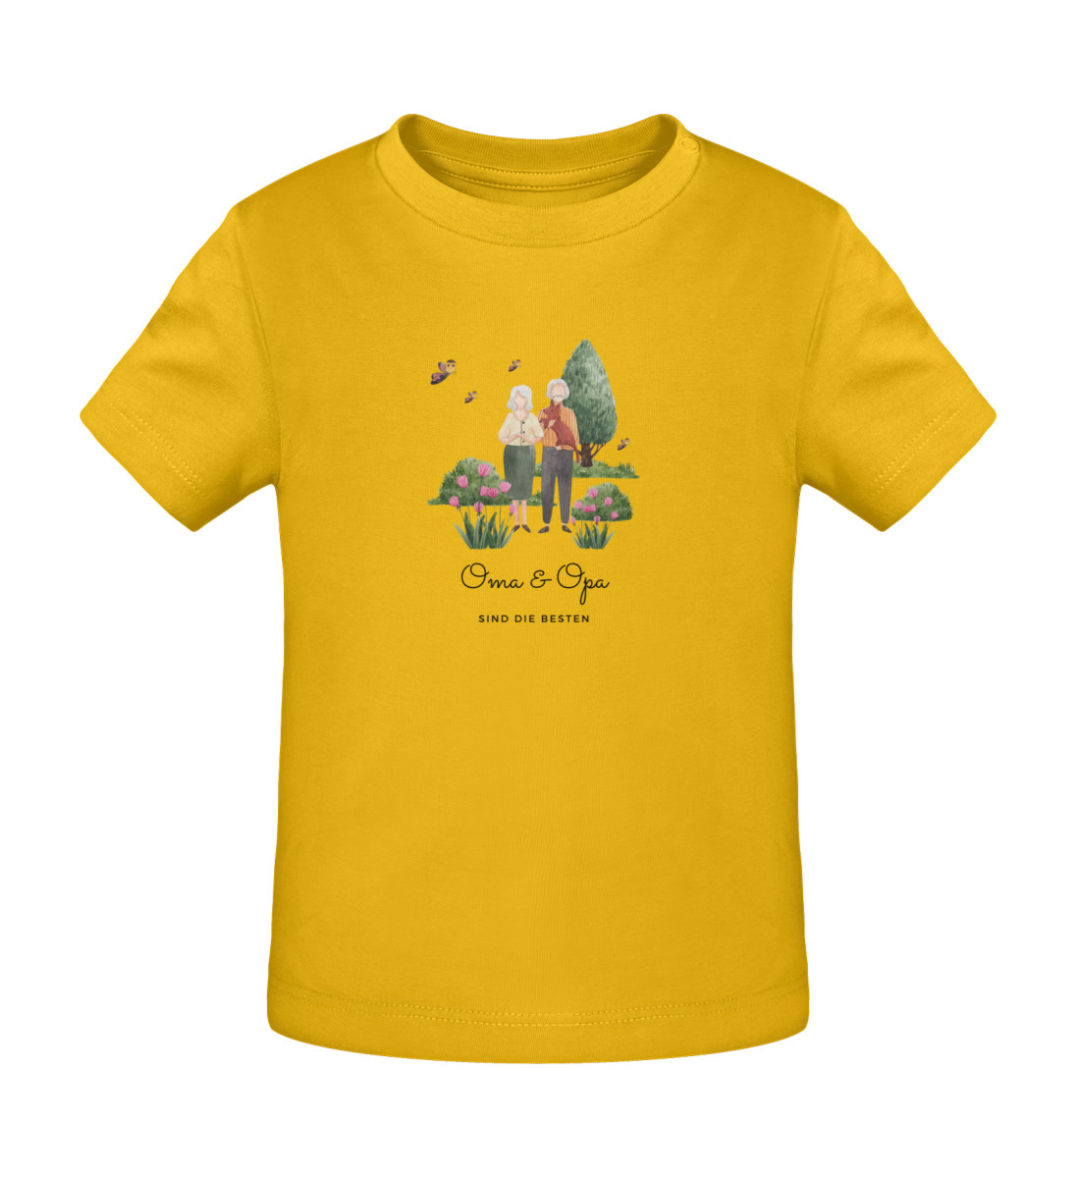 Oma & Opa sind die besten - Baby Creator T-Shirt ST/ST-6885